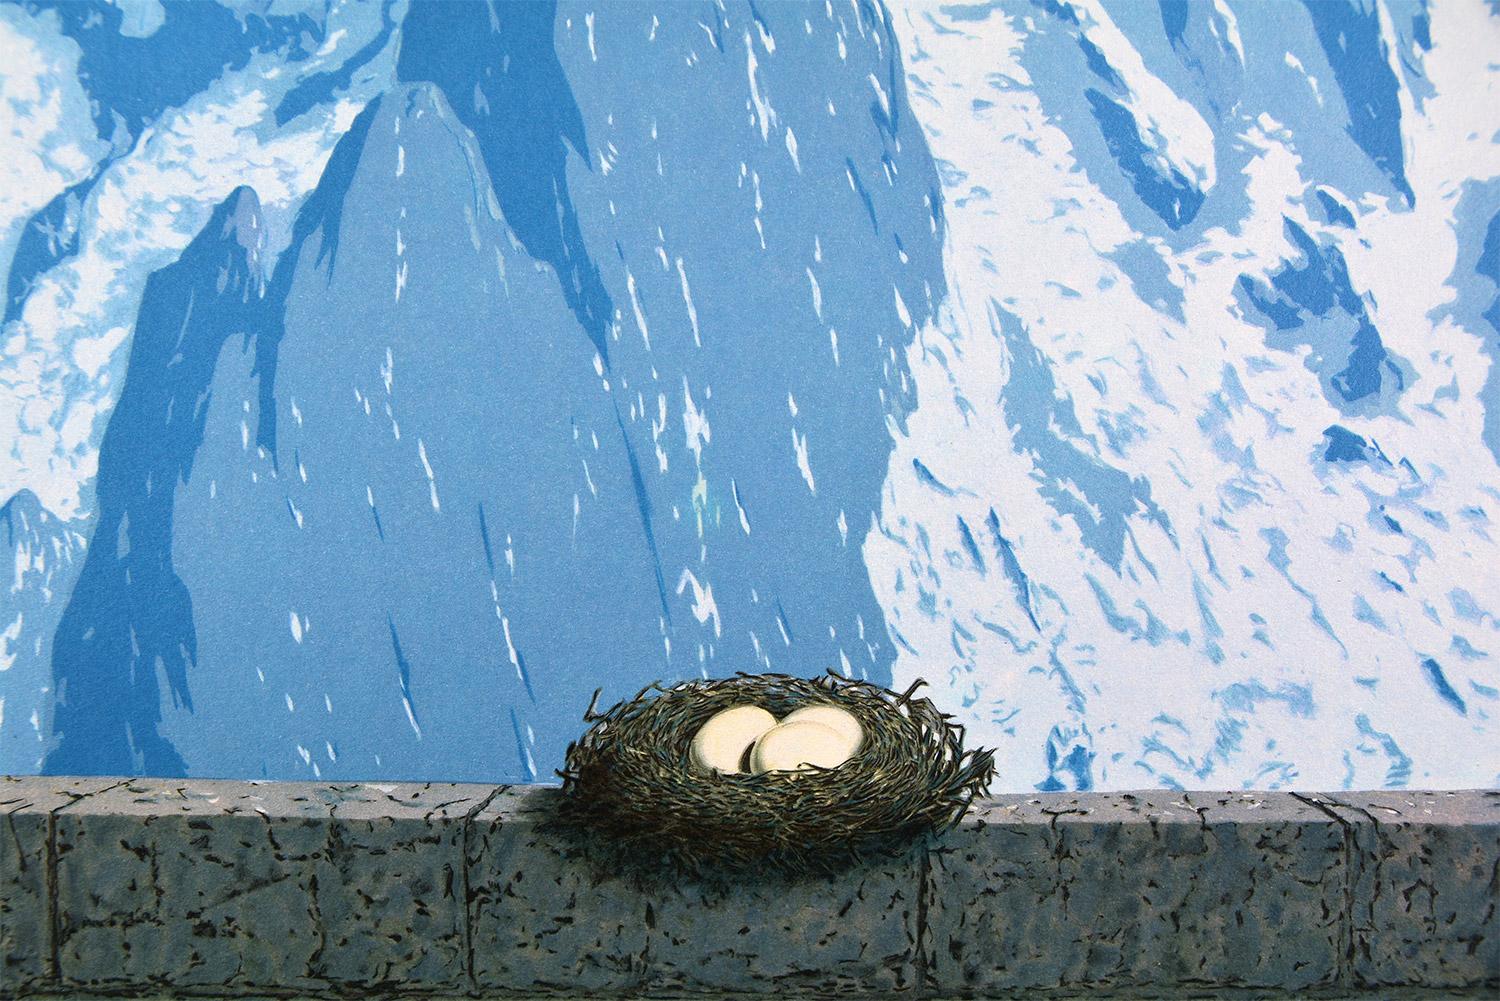 René Magritte - LE DOMAINE D'ARNHEIM, 1962 (DIE DOMÄNE VON ARNHEIM)
Datum der Gründung: 2010
Medium: Lithographie auf BFK Rives Papier
Nummer der Ausgabe: 155/275
Größe: 60 x 45 cm
Zustand: Neu, in neuwertigem Zustand und nie gerahmt
Beobachtungen: